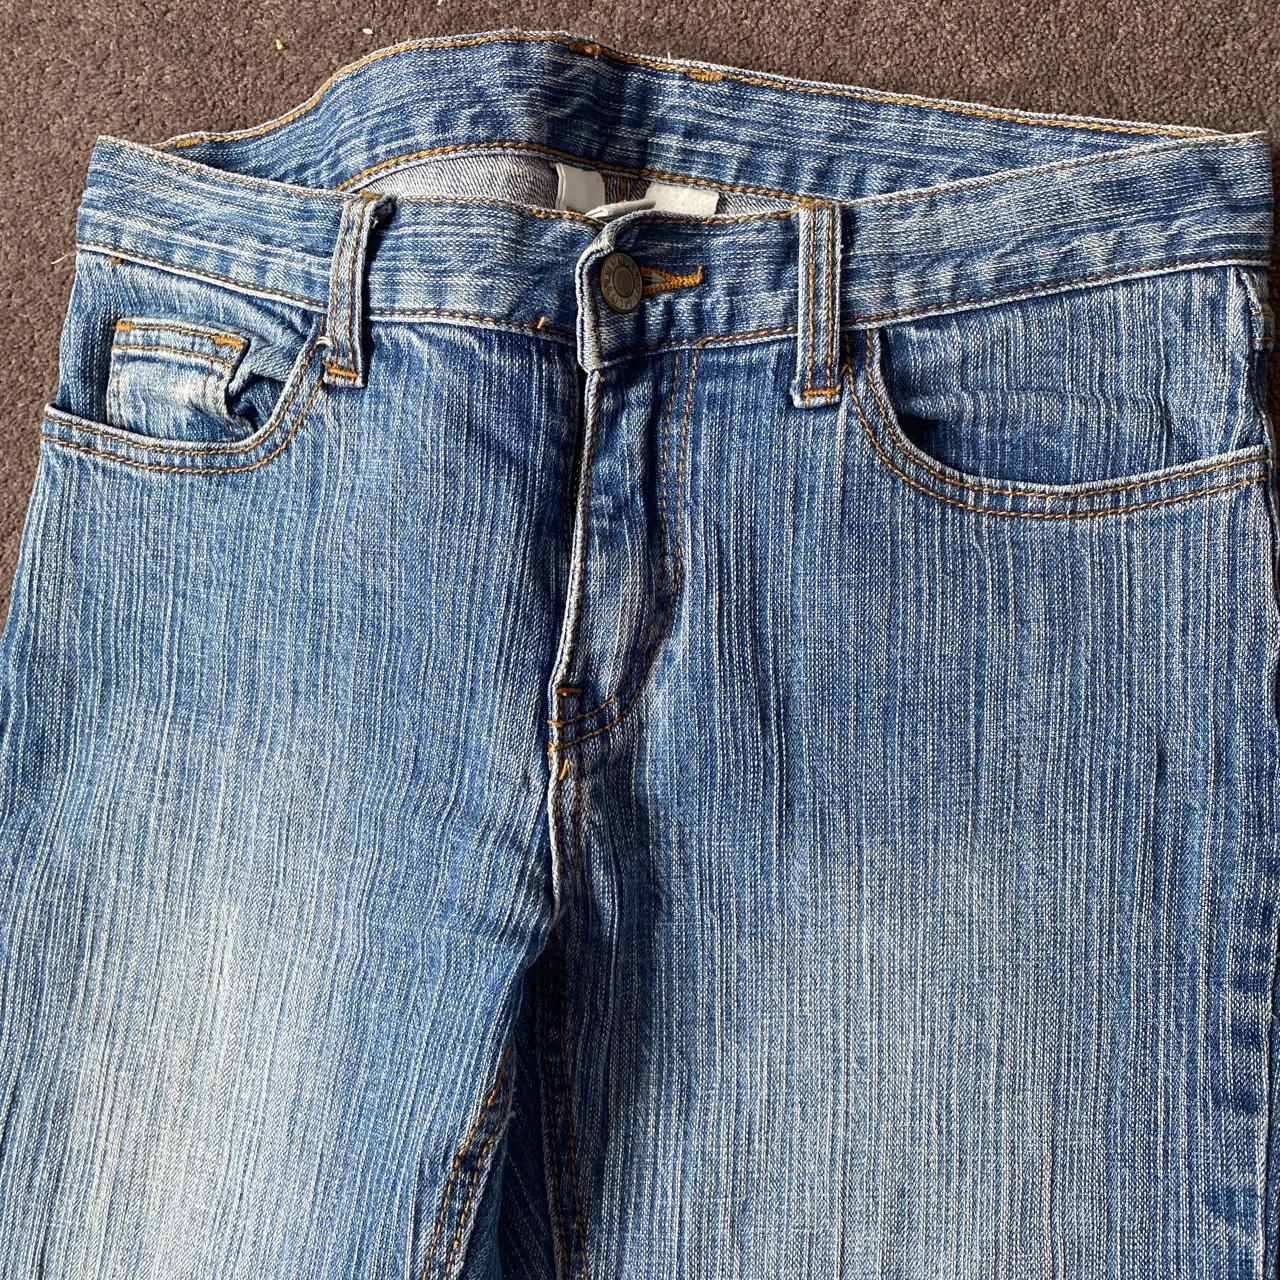 Brandy Melville Brielle 90s jeans. Good condition,... - Depop